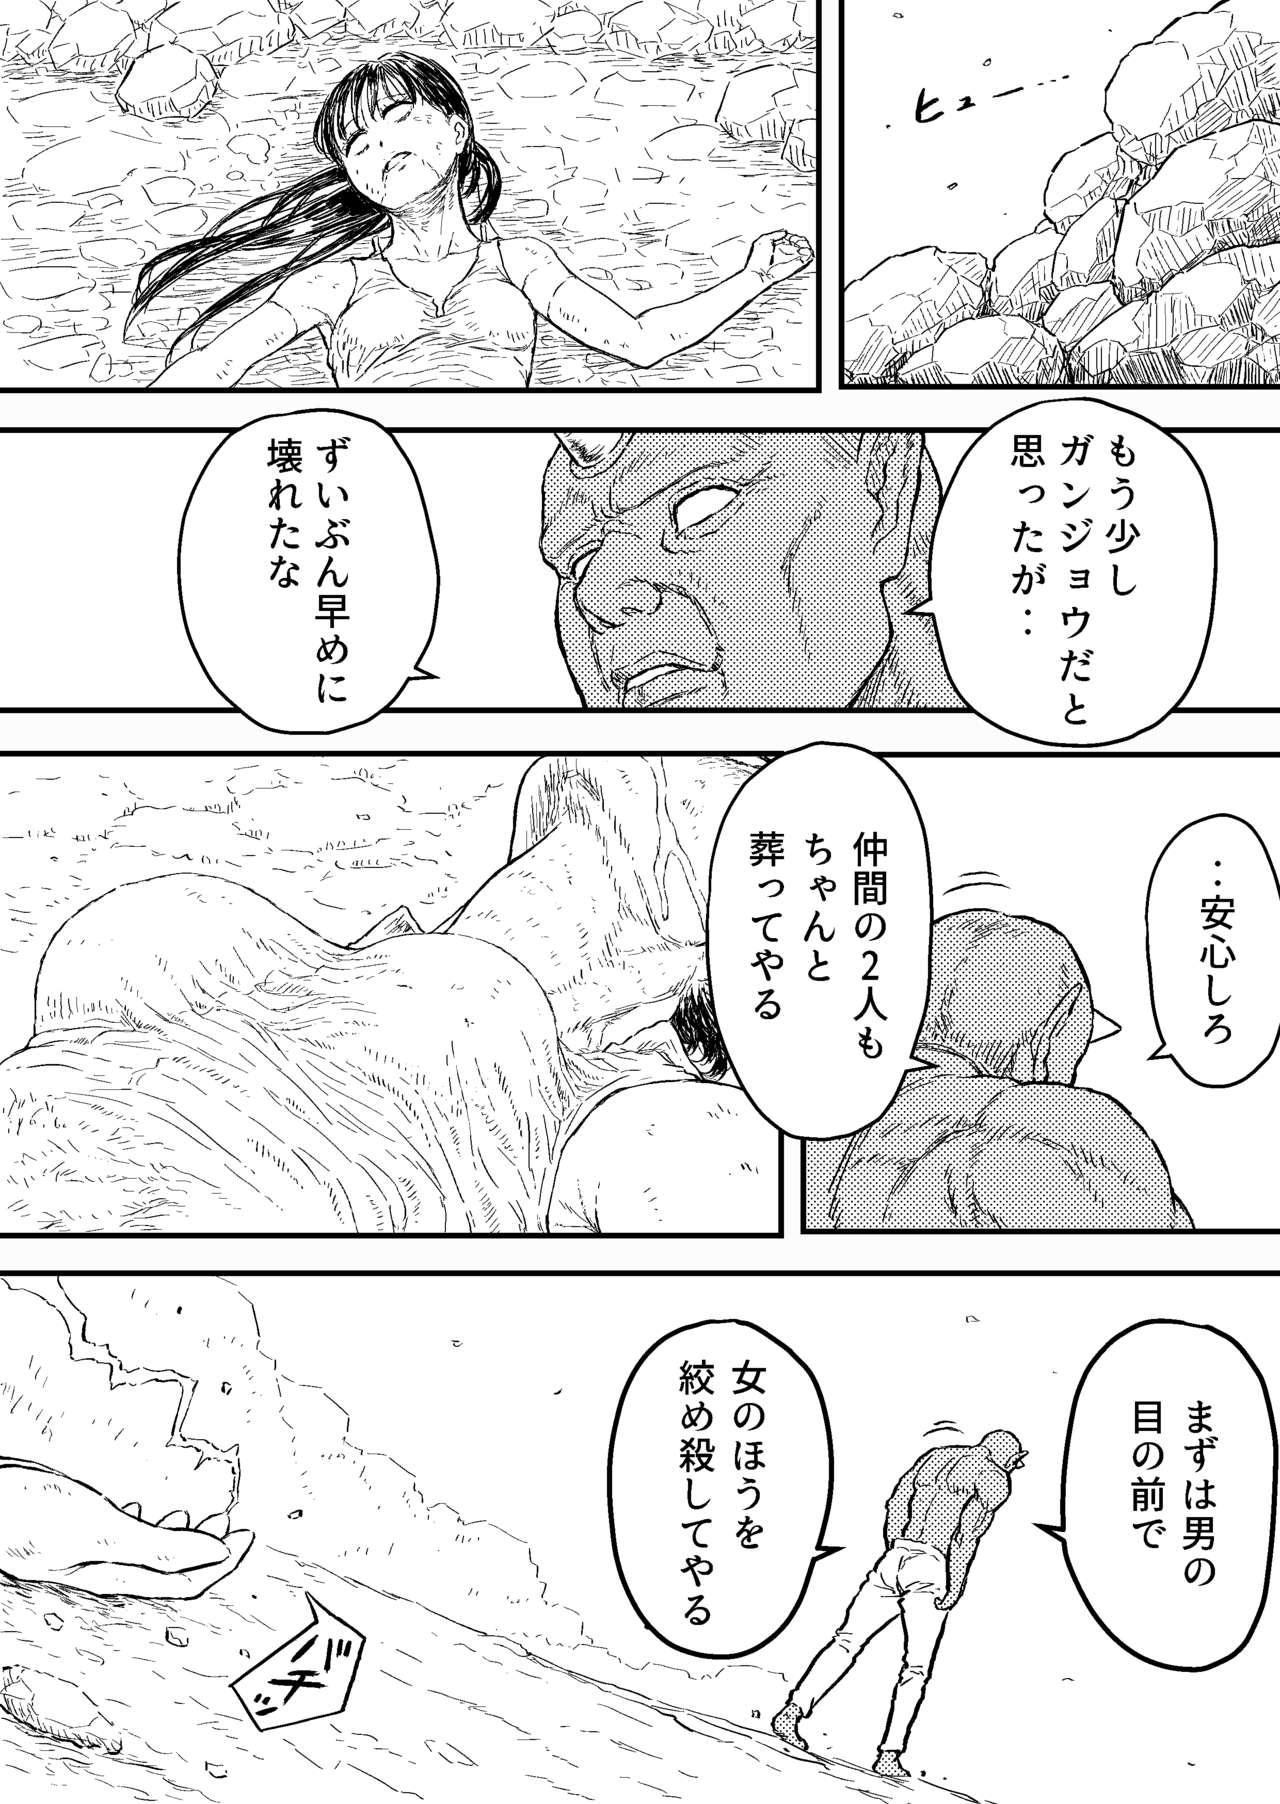 Transex Sutoranguru Gold 4 『Seigi no hiroin kosatsu subete o kake te tataka ta shojo no unmei』 - Original Amateur Cumshots - Page 2